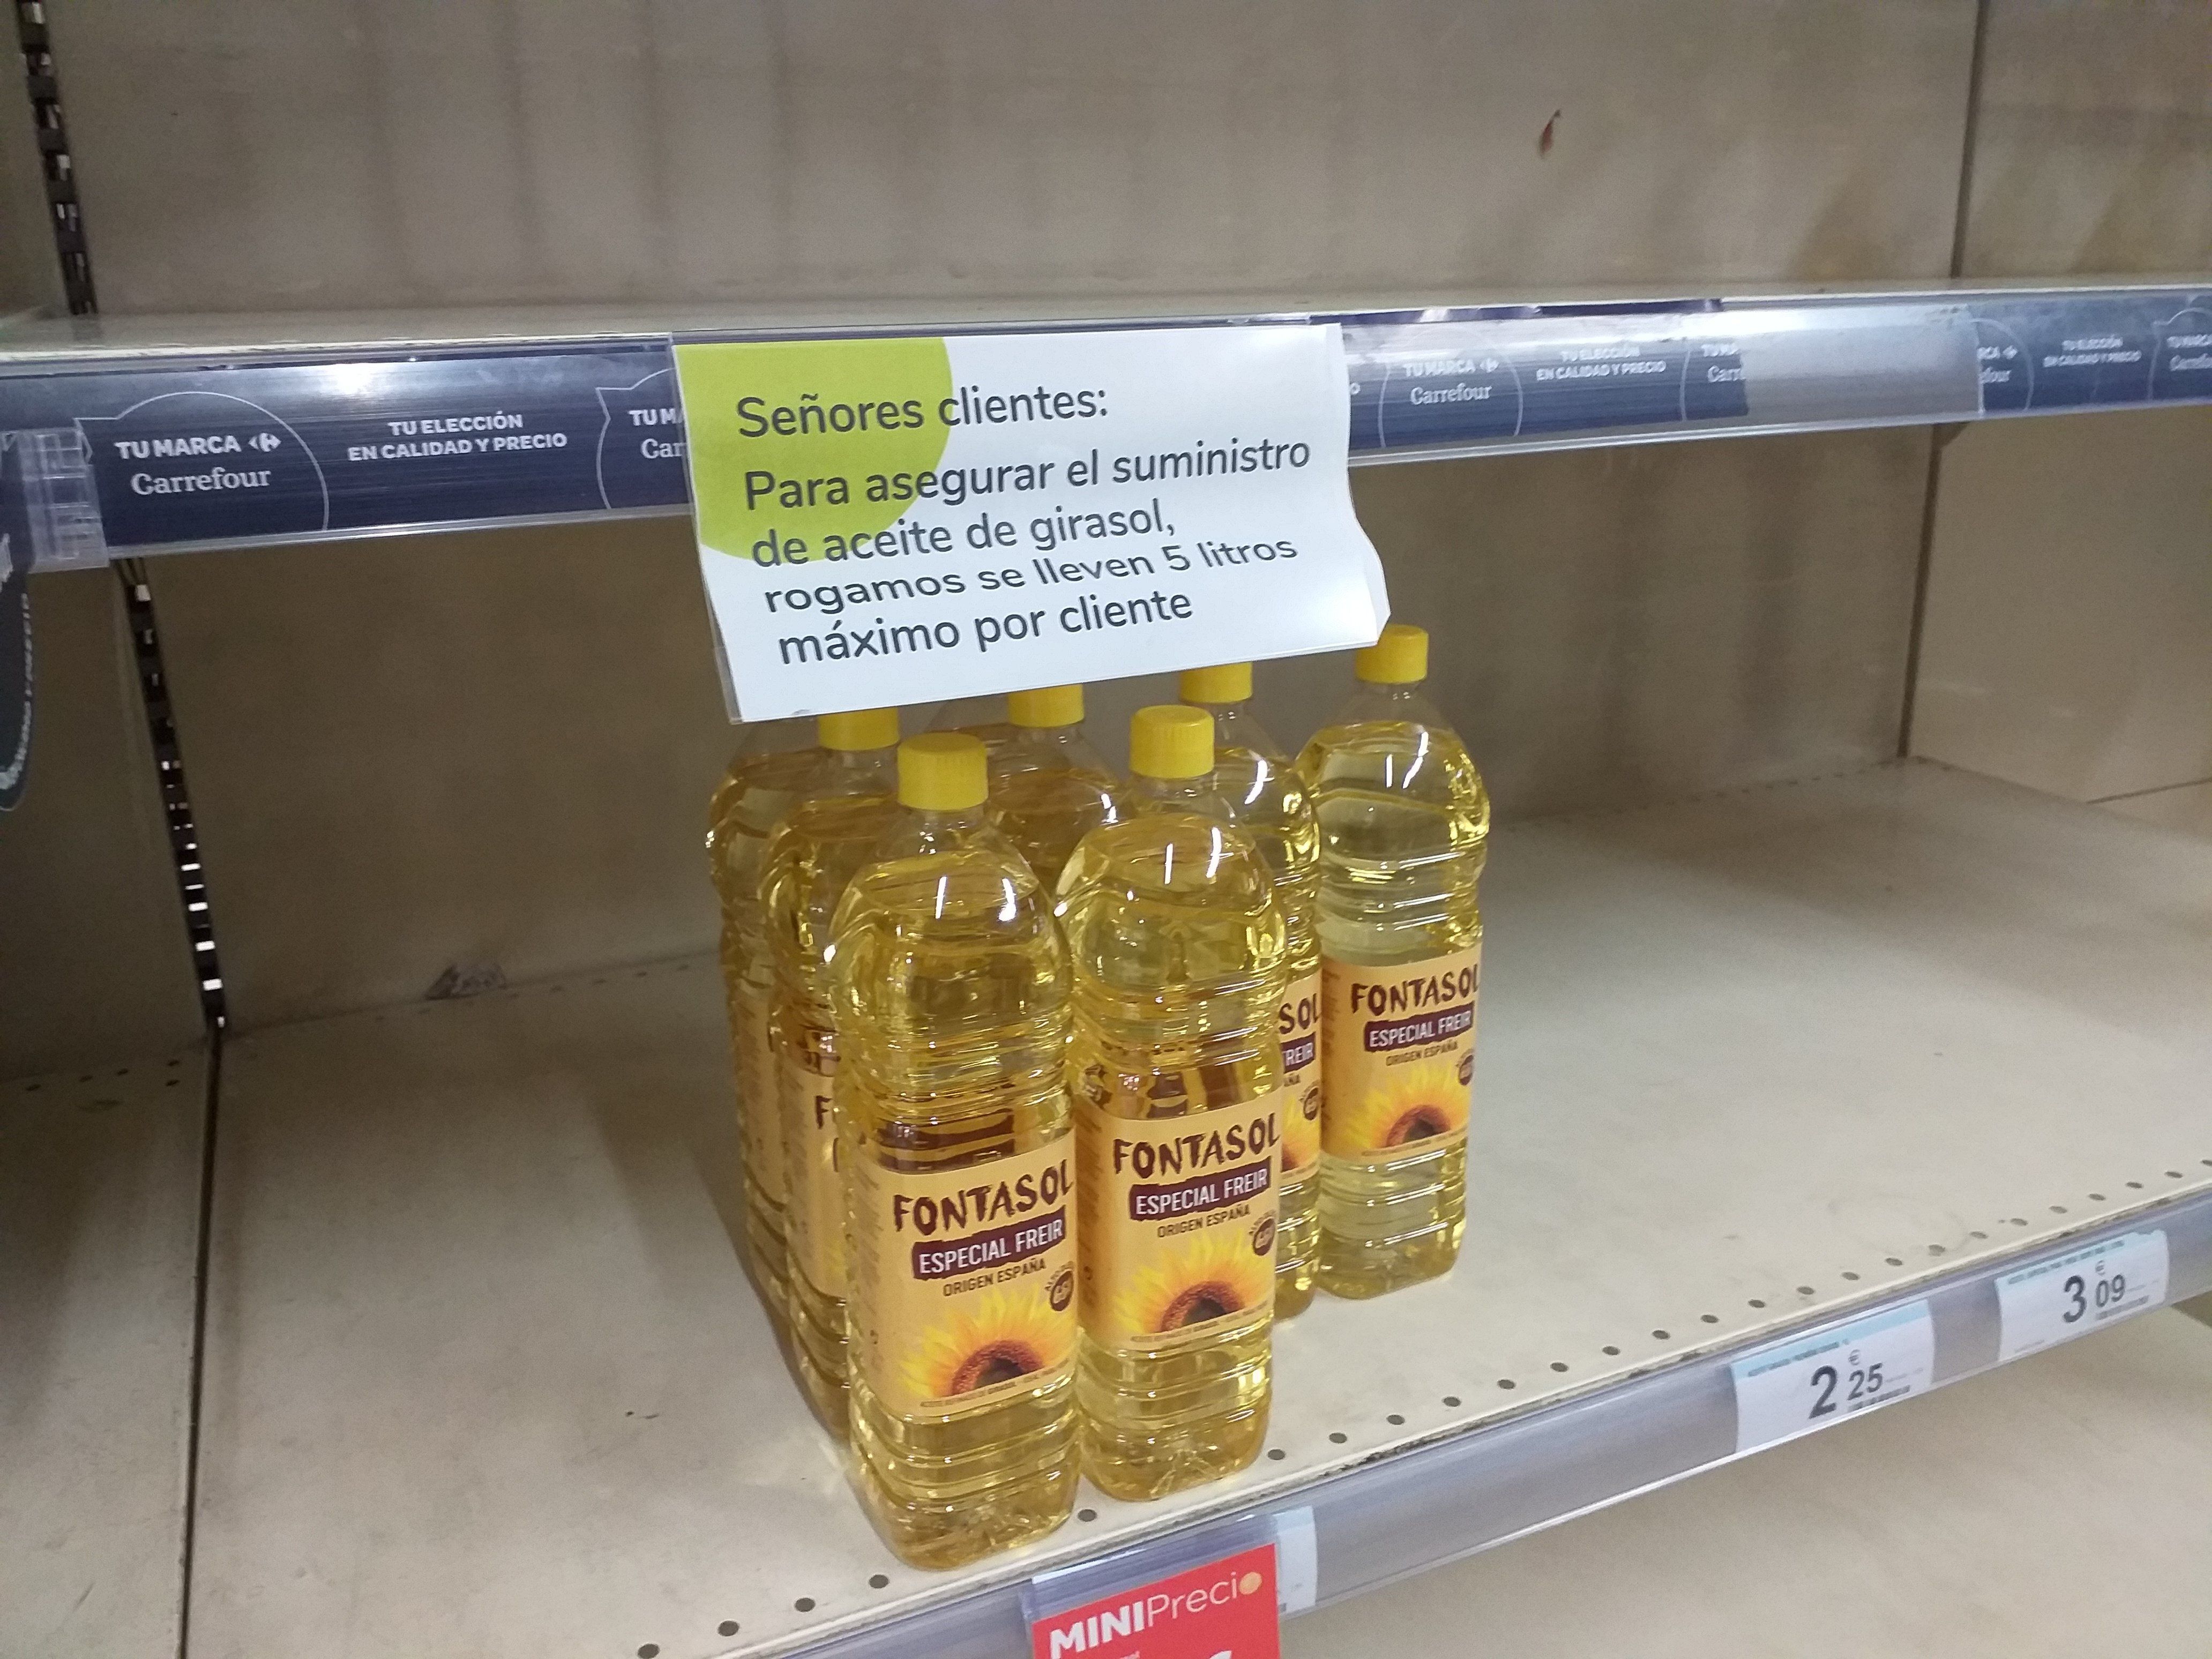 EuropaPress 4308625 cartel supermercado gijon donde ruegan no comprar mas litros aceite girasol